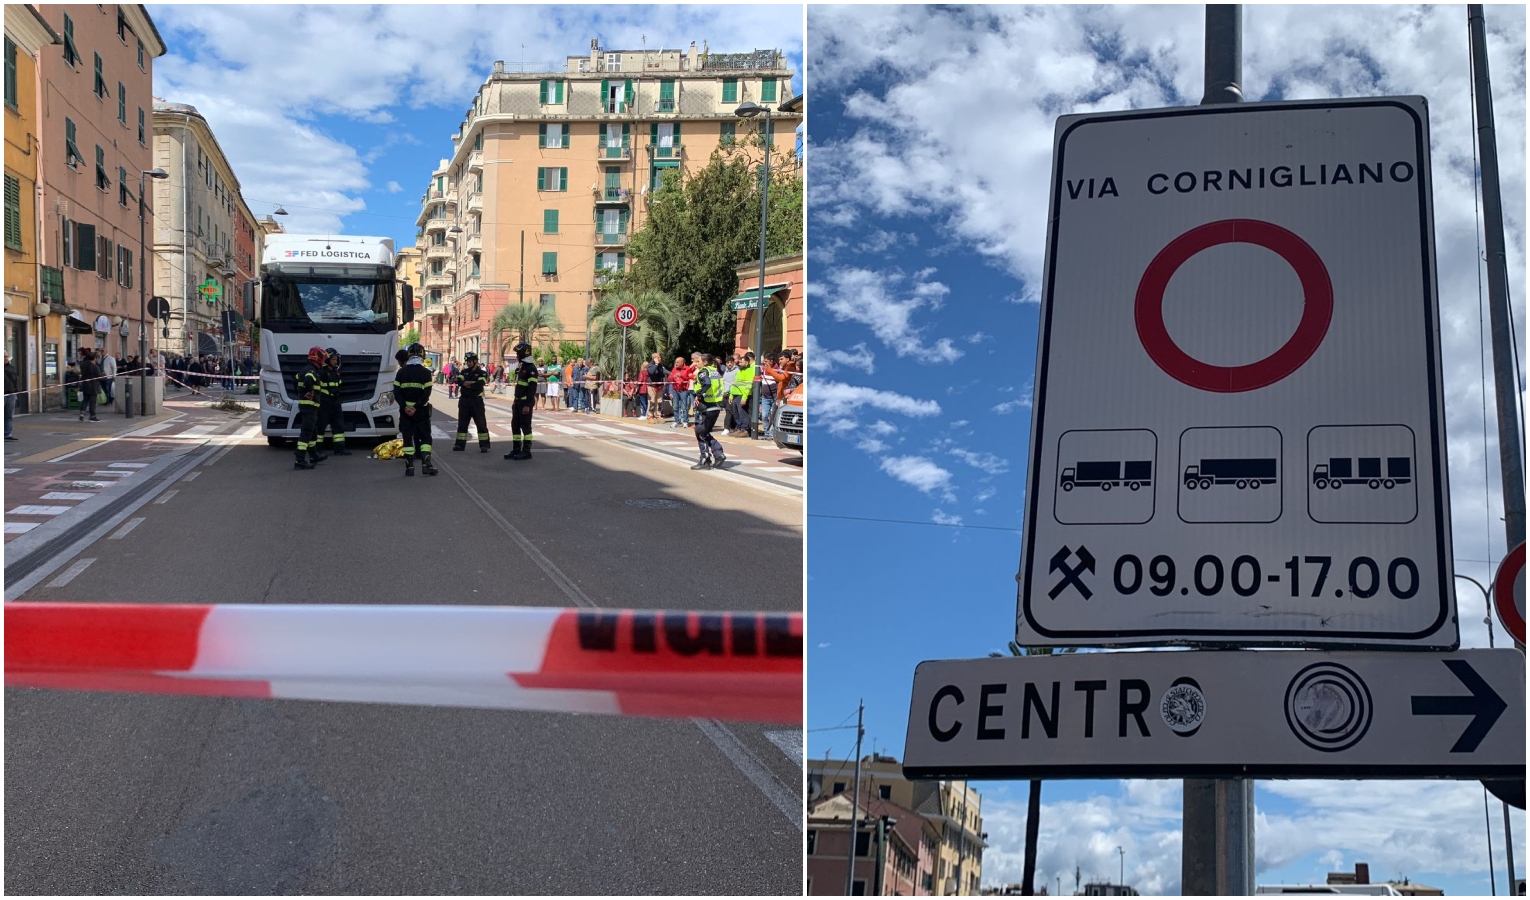 Incidente mortale in via Cornigliano a Genova, residenti e municipio: 